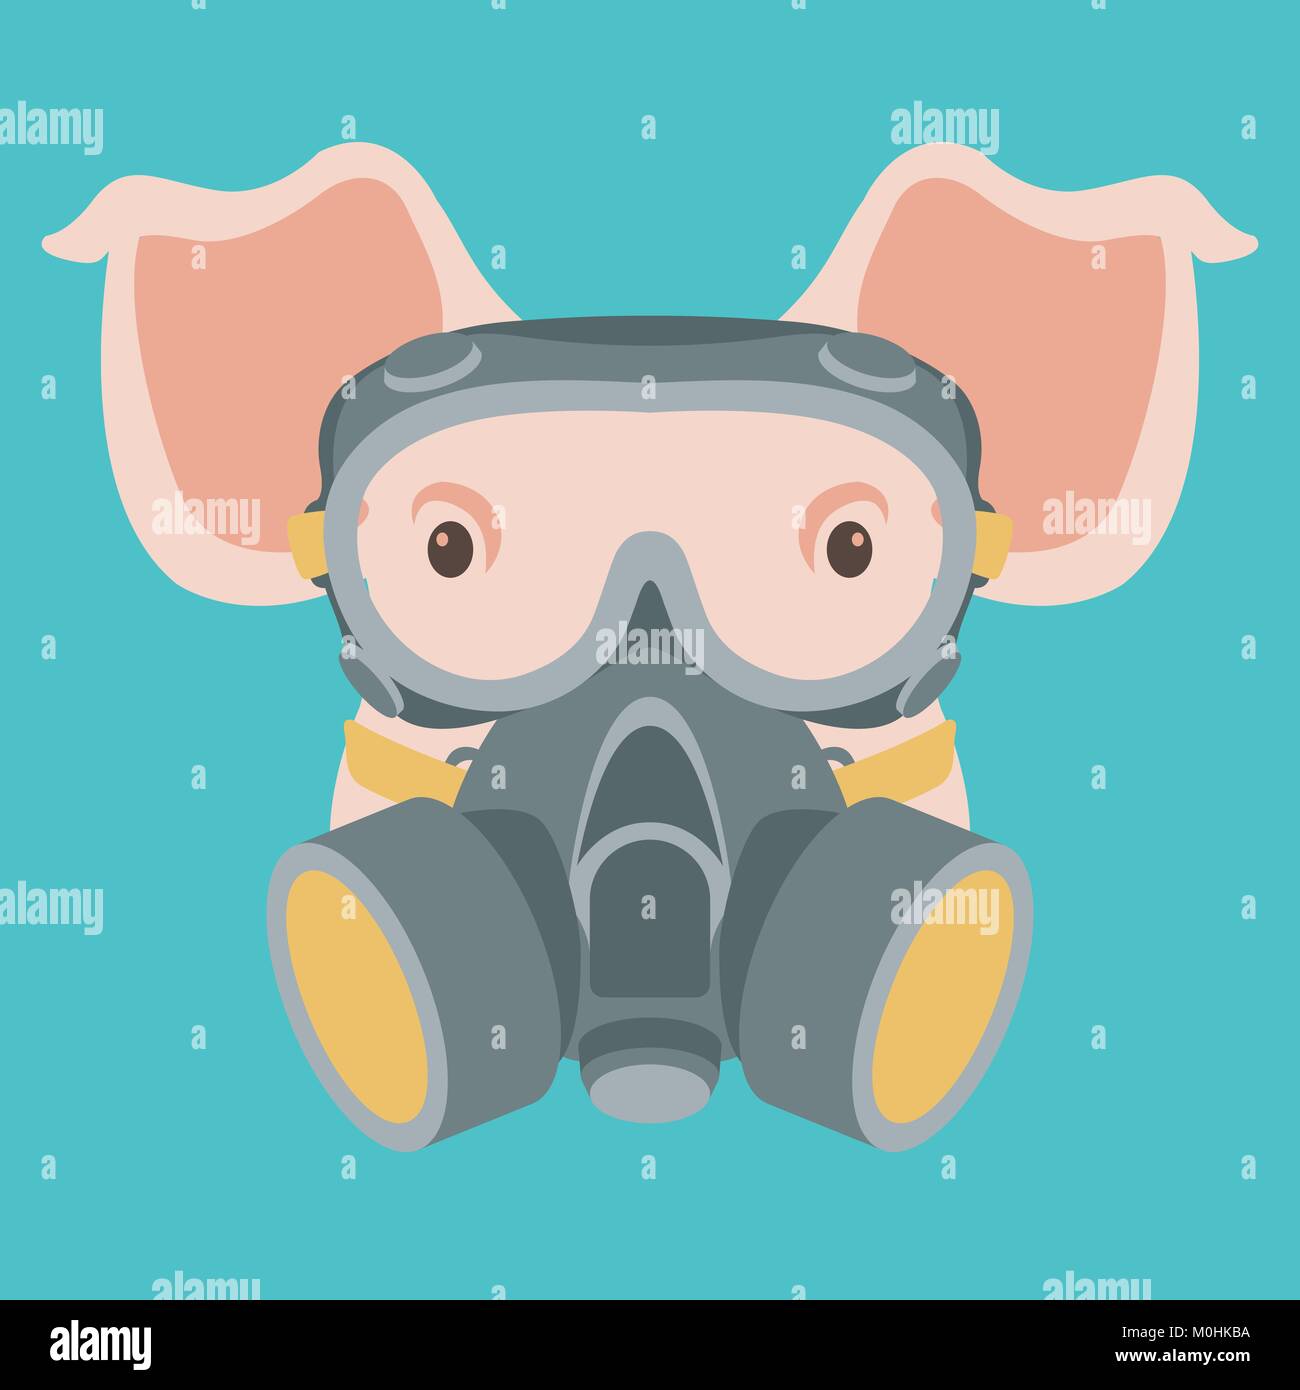 Schwein Gesicht in Gasmaske Vektor-illustration Flat Style Vorderansicht Stock Vektor